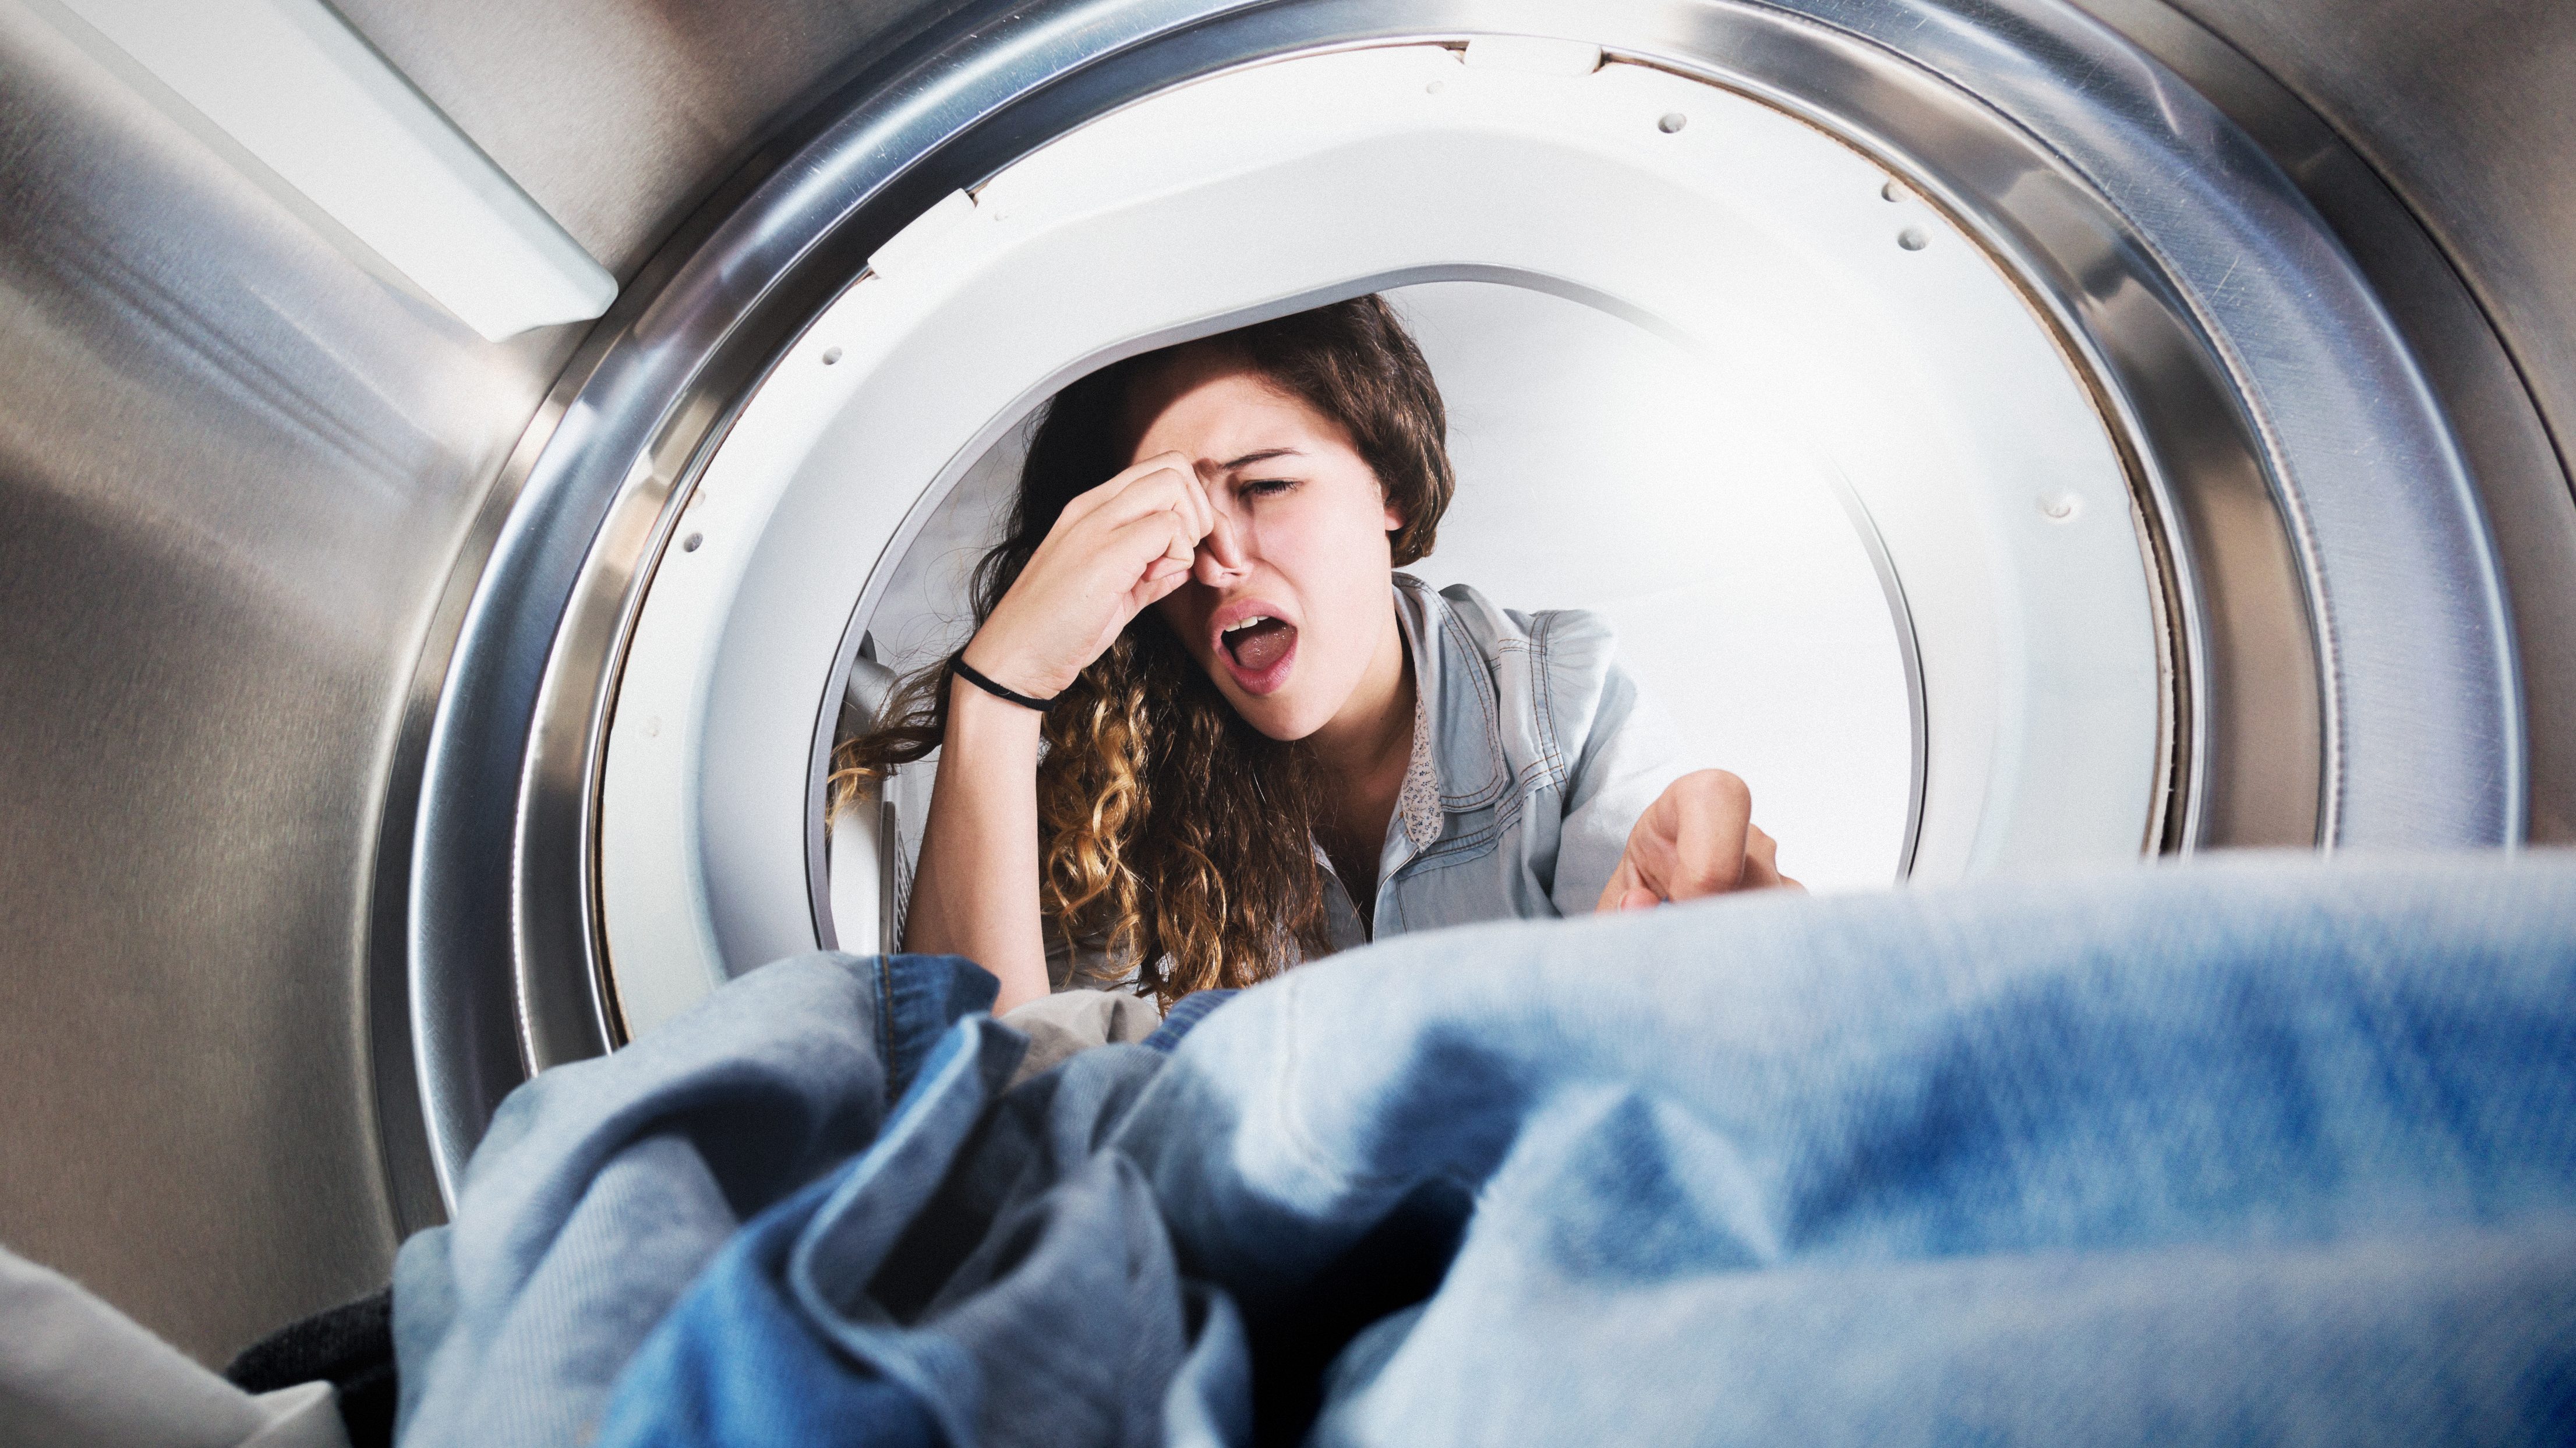 Frau guckt in stinkende Waschmaschine